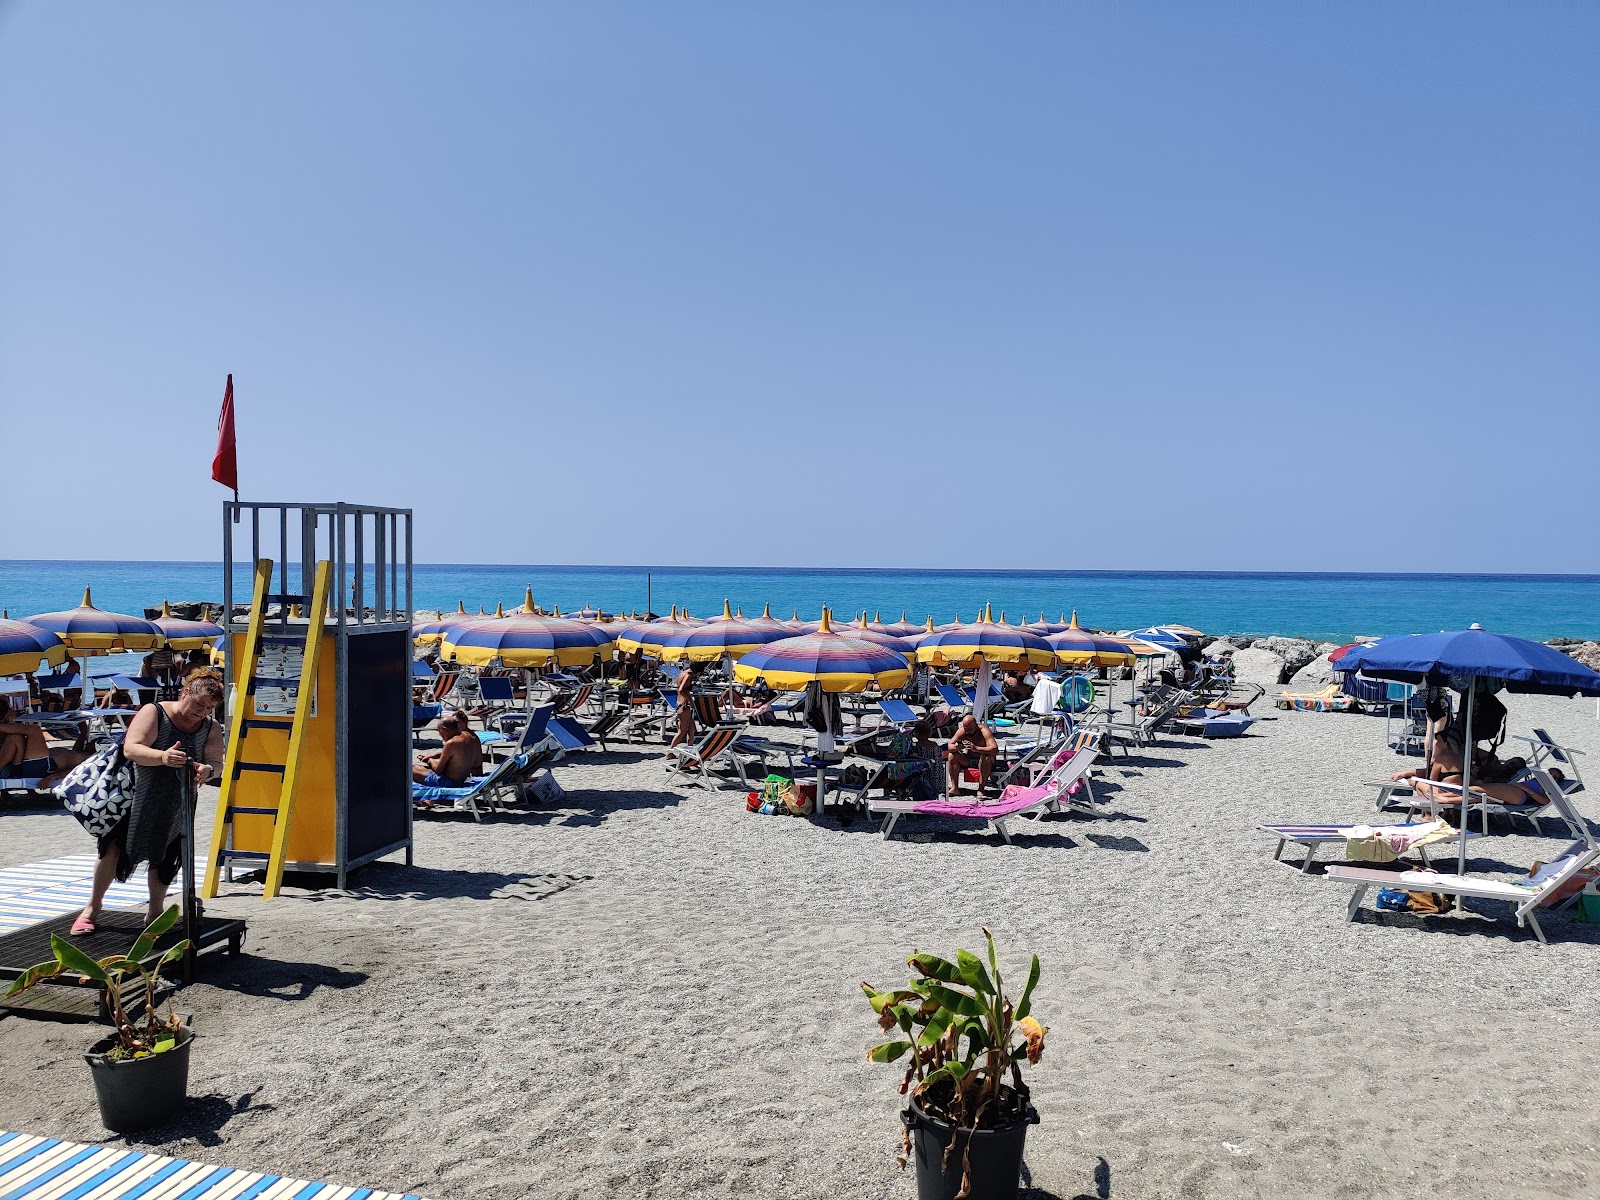 Spiaggia Coreca'in fotoğrafı doğrudan plaj ile birlikte